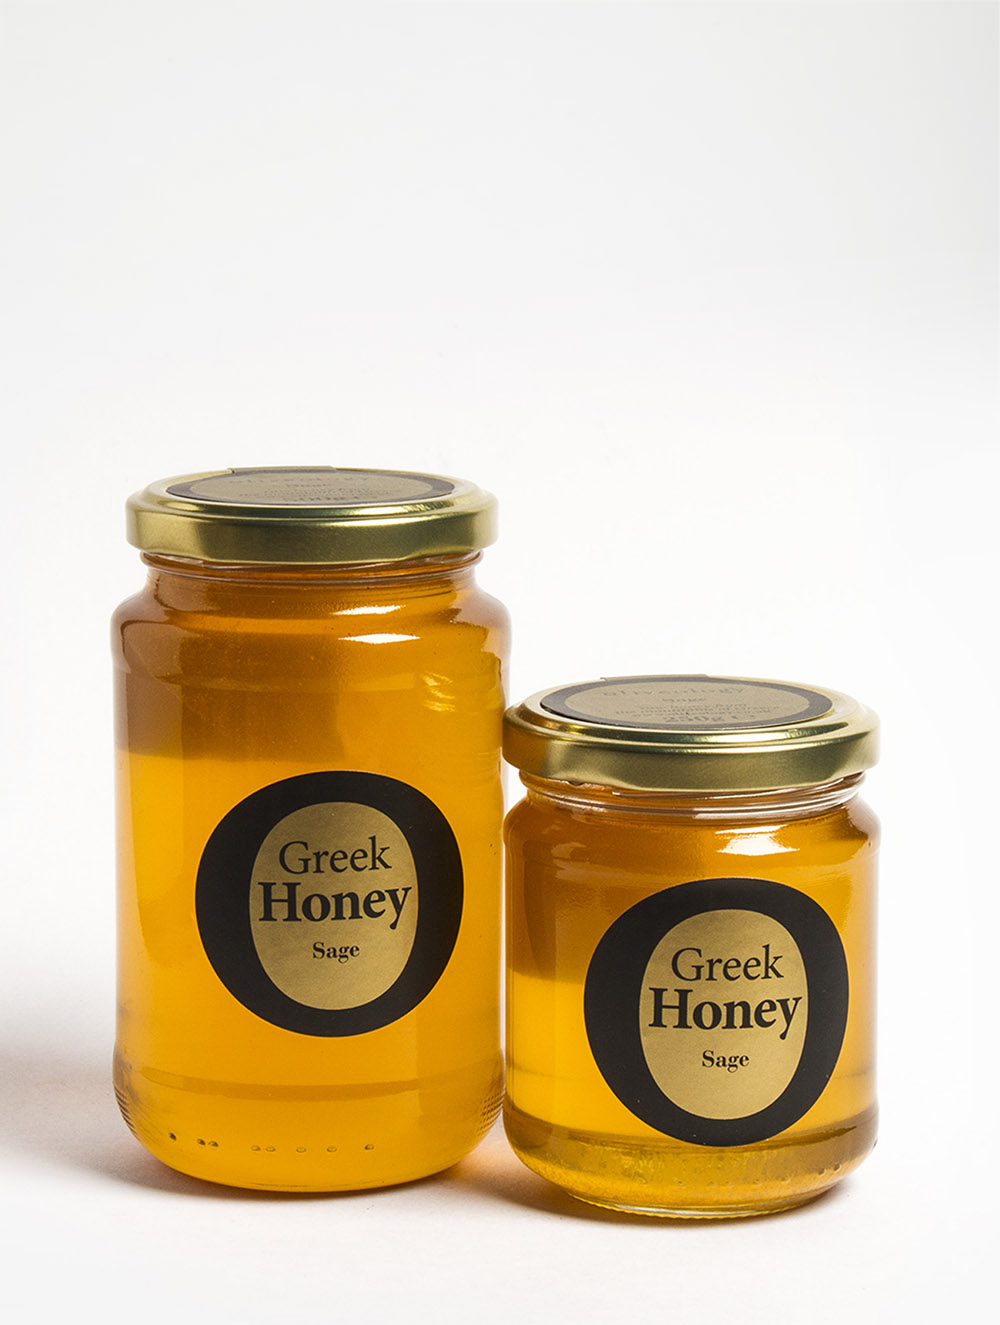 Sage honey - Oliveology Organic Artisan Products